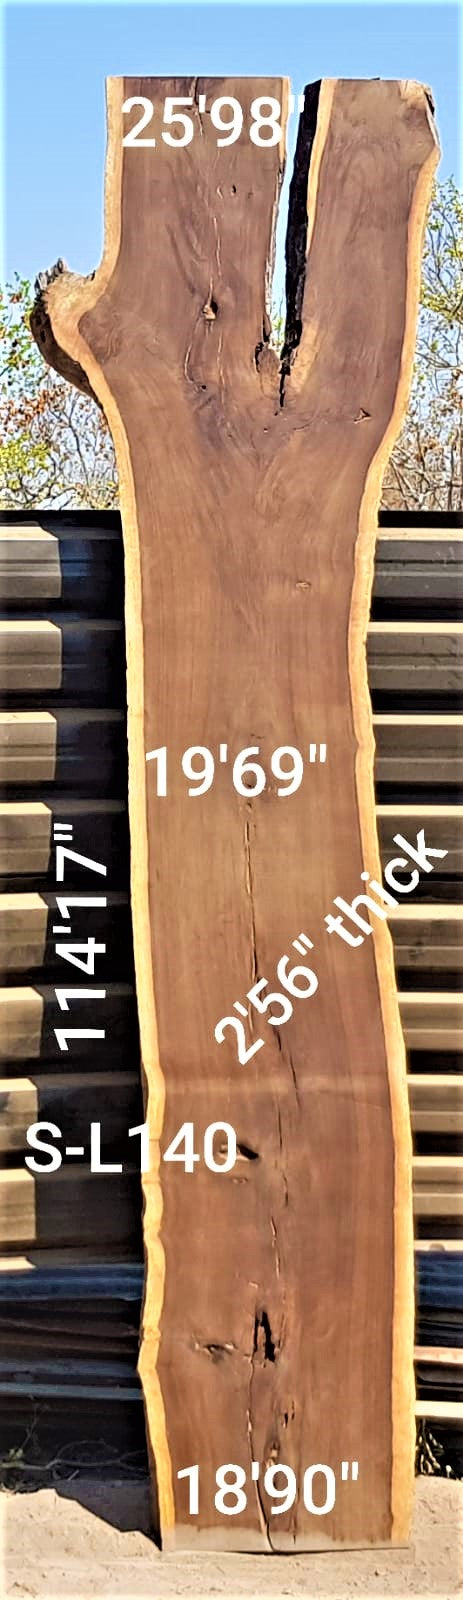 Leadwood Slab (114.17" x 25.98" x 2.56")